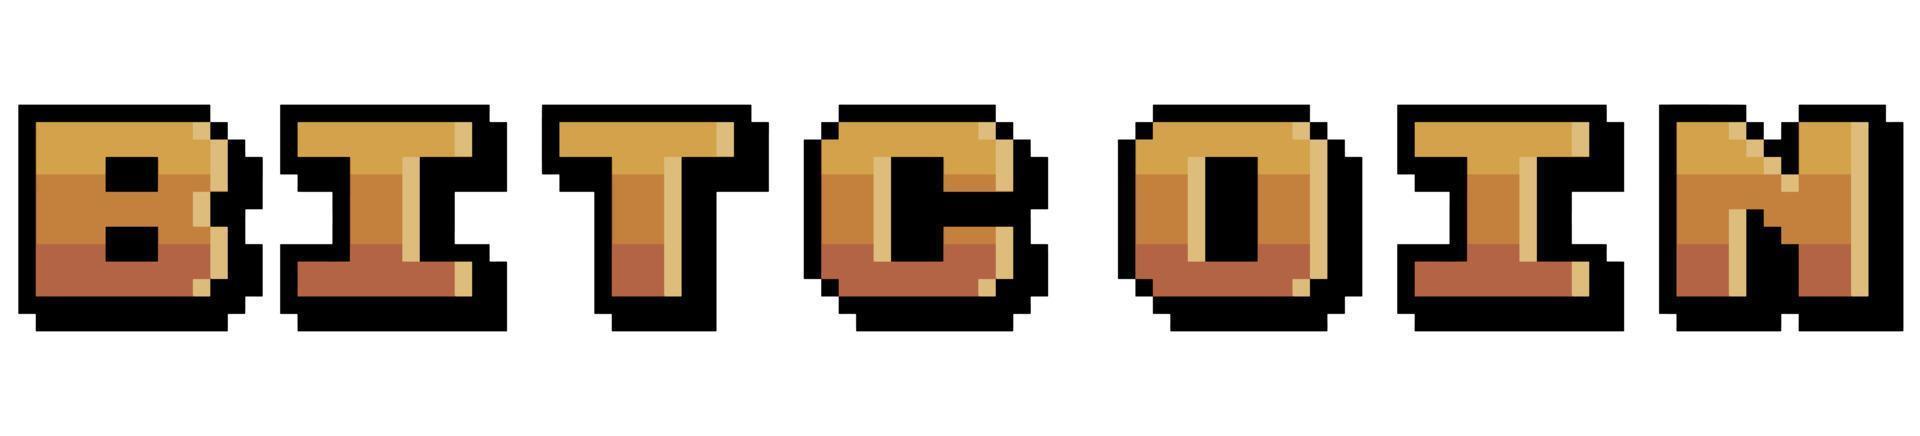 pixel art bitcoin logo vector pictogram voor 8bit spel op witte achtergrond